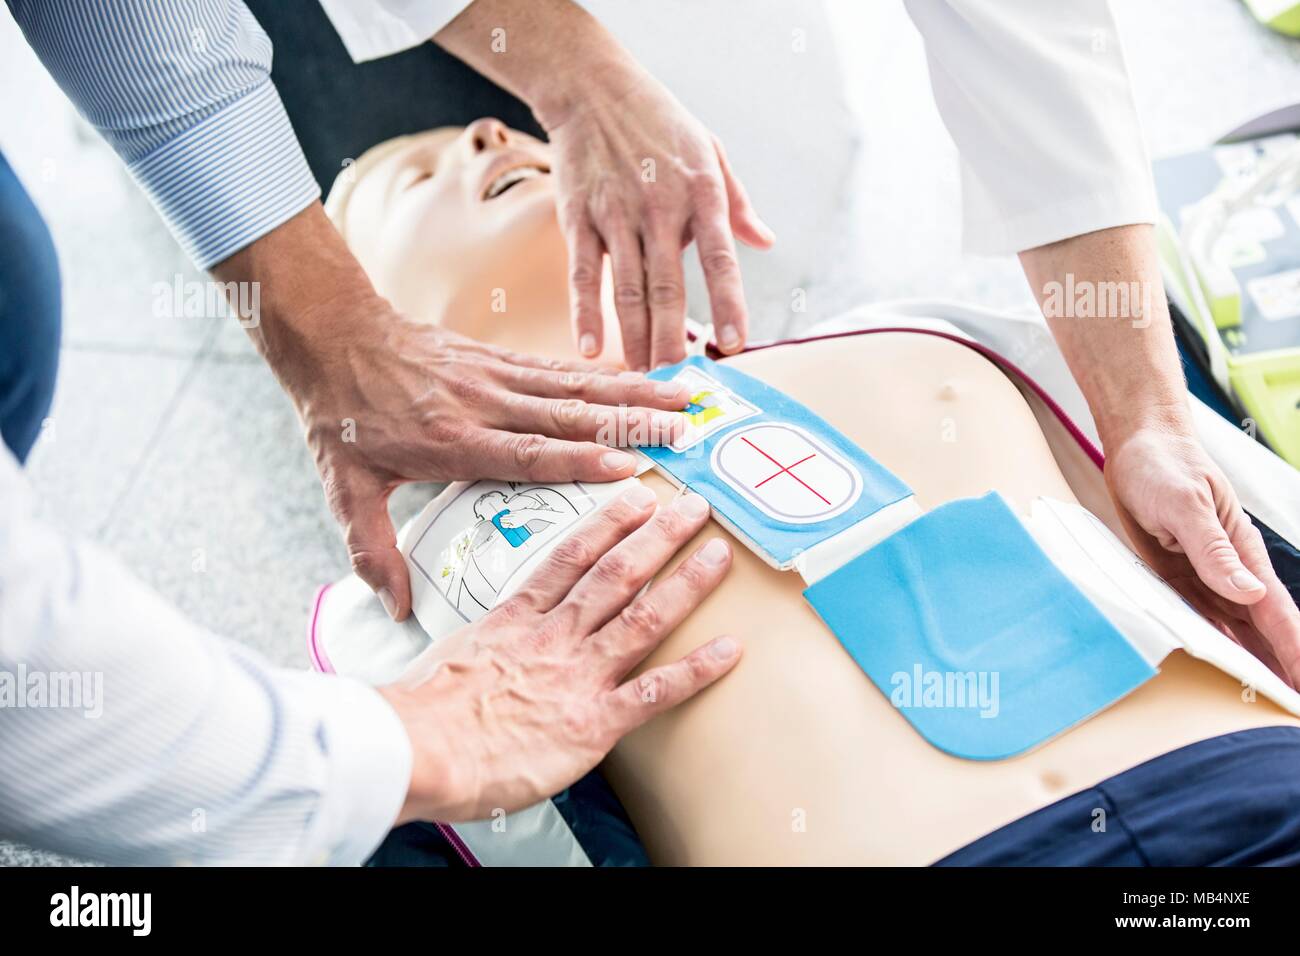 Ersthelfer, automatisierter externer Defibrillator (AED) Pads auf einer HLW Training dummy. Stockfoto